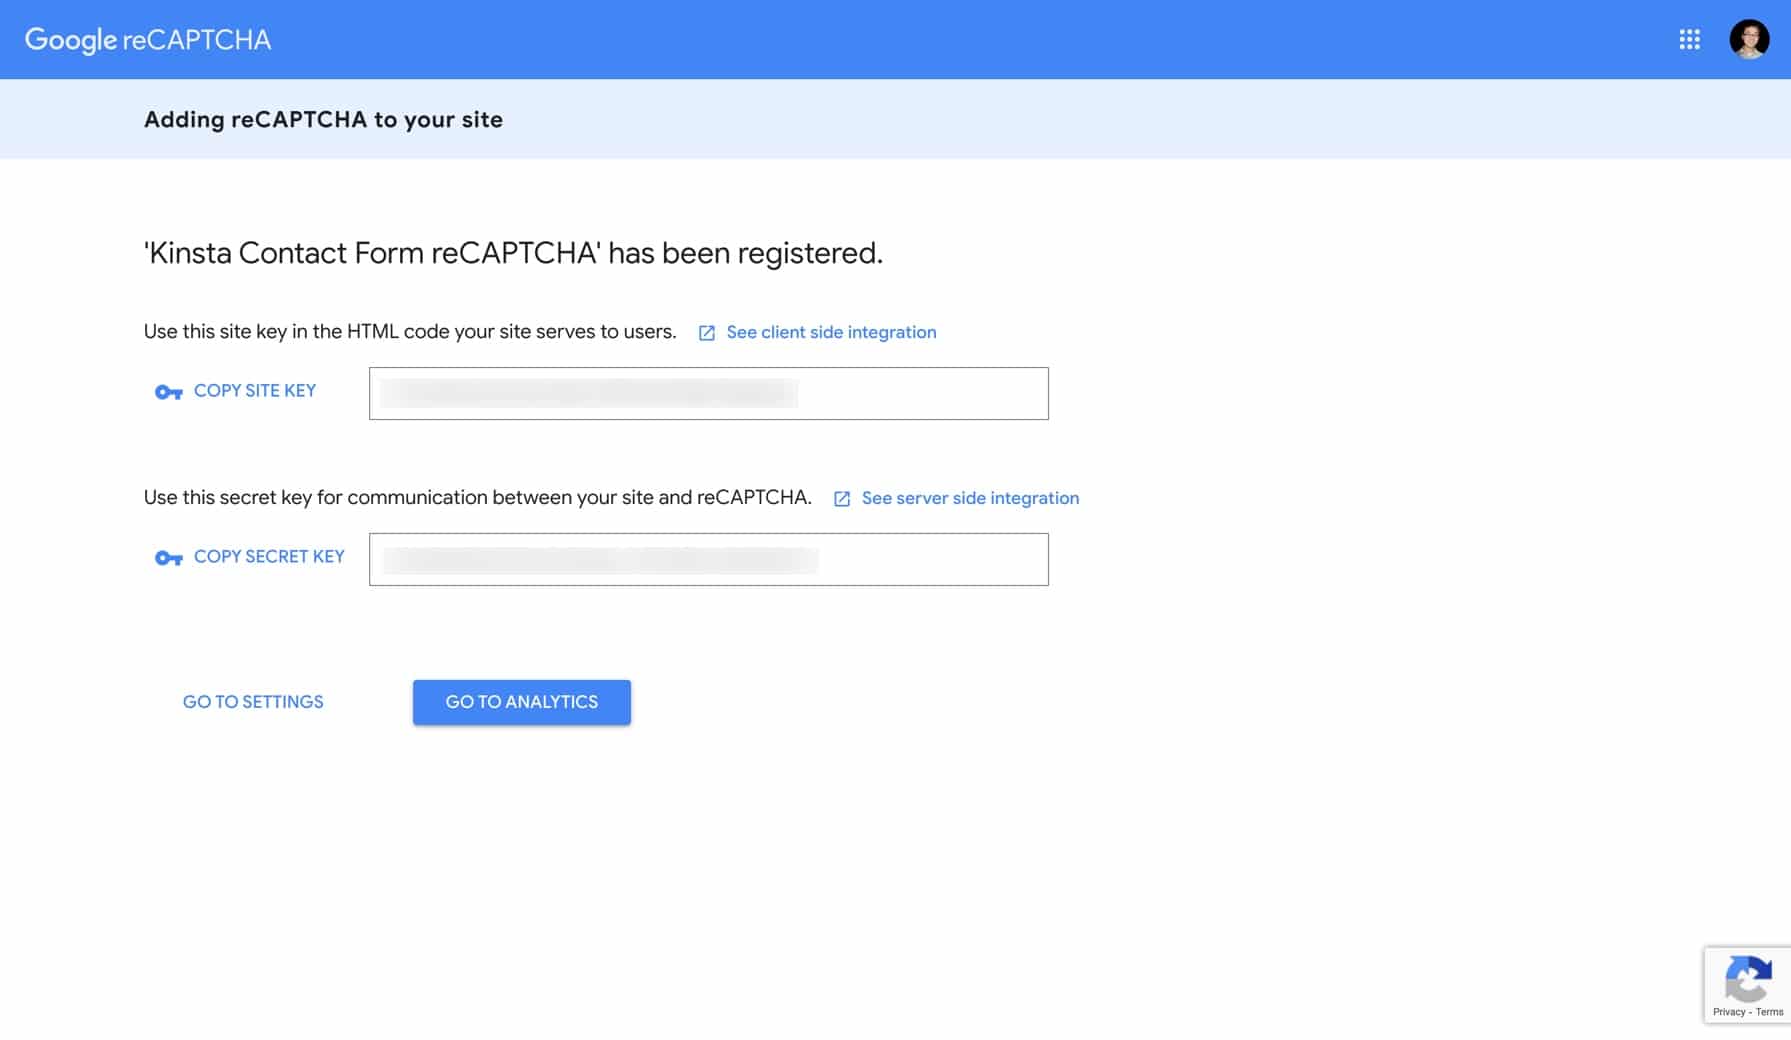 El sitio de Google reCAPTCHA y las claves secretas.